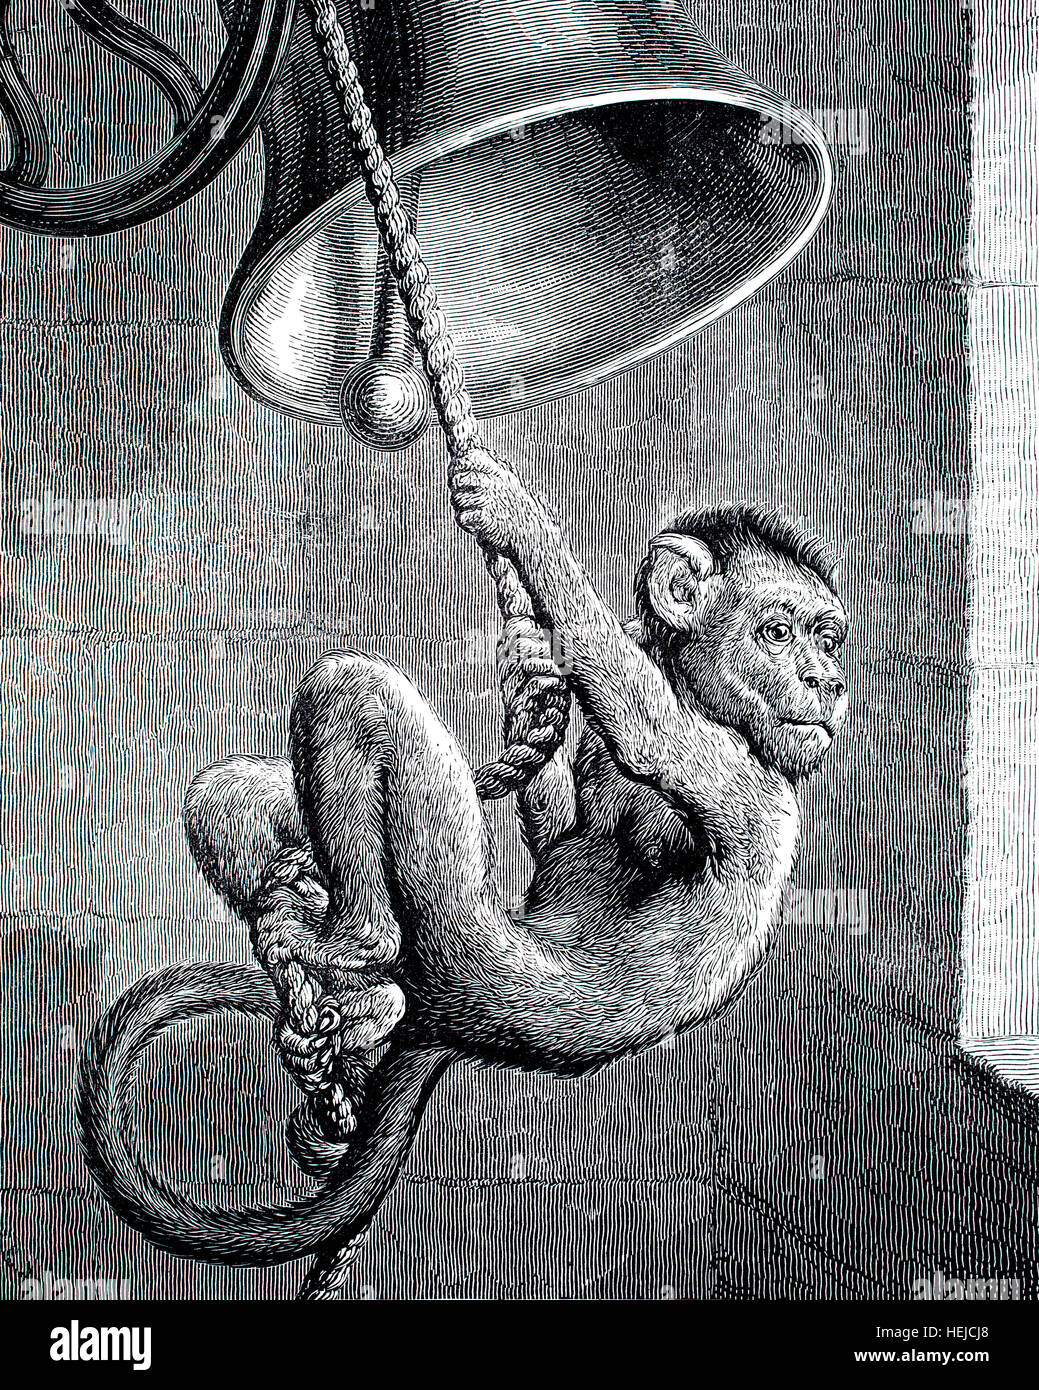 Monkey basculante in corda squilla sul campanile della chiesa, illustrazione da 1884 Chatterbox settimanale per bambini: carta Foto Stock